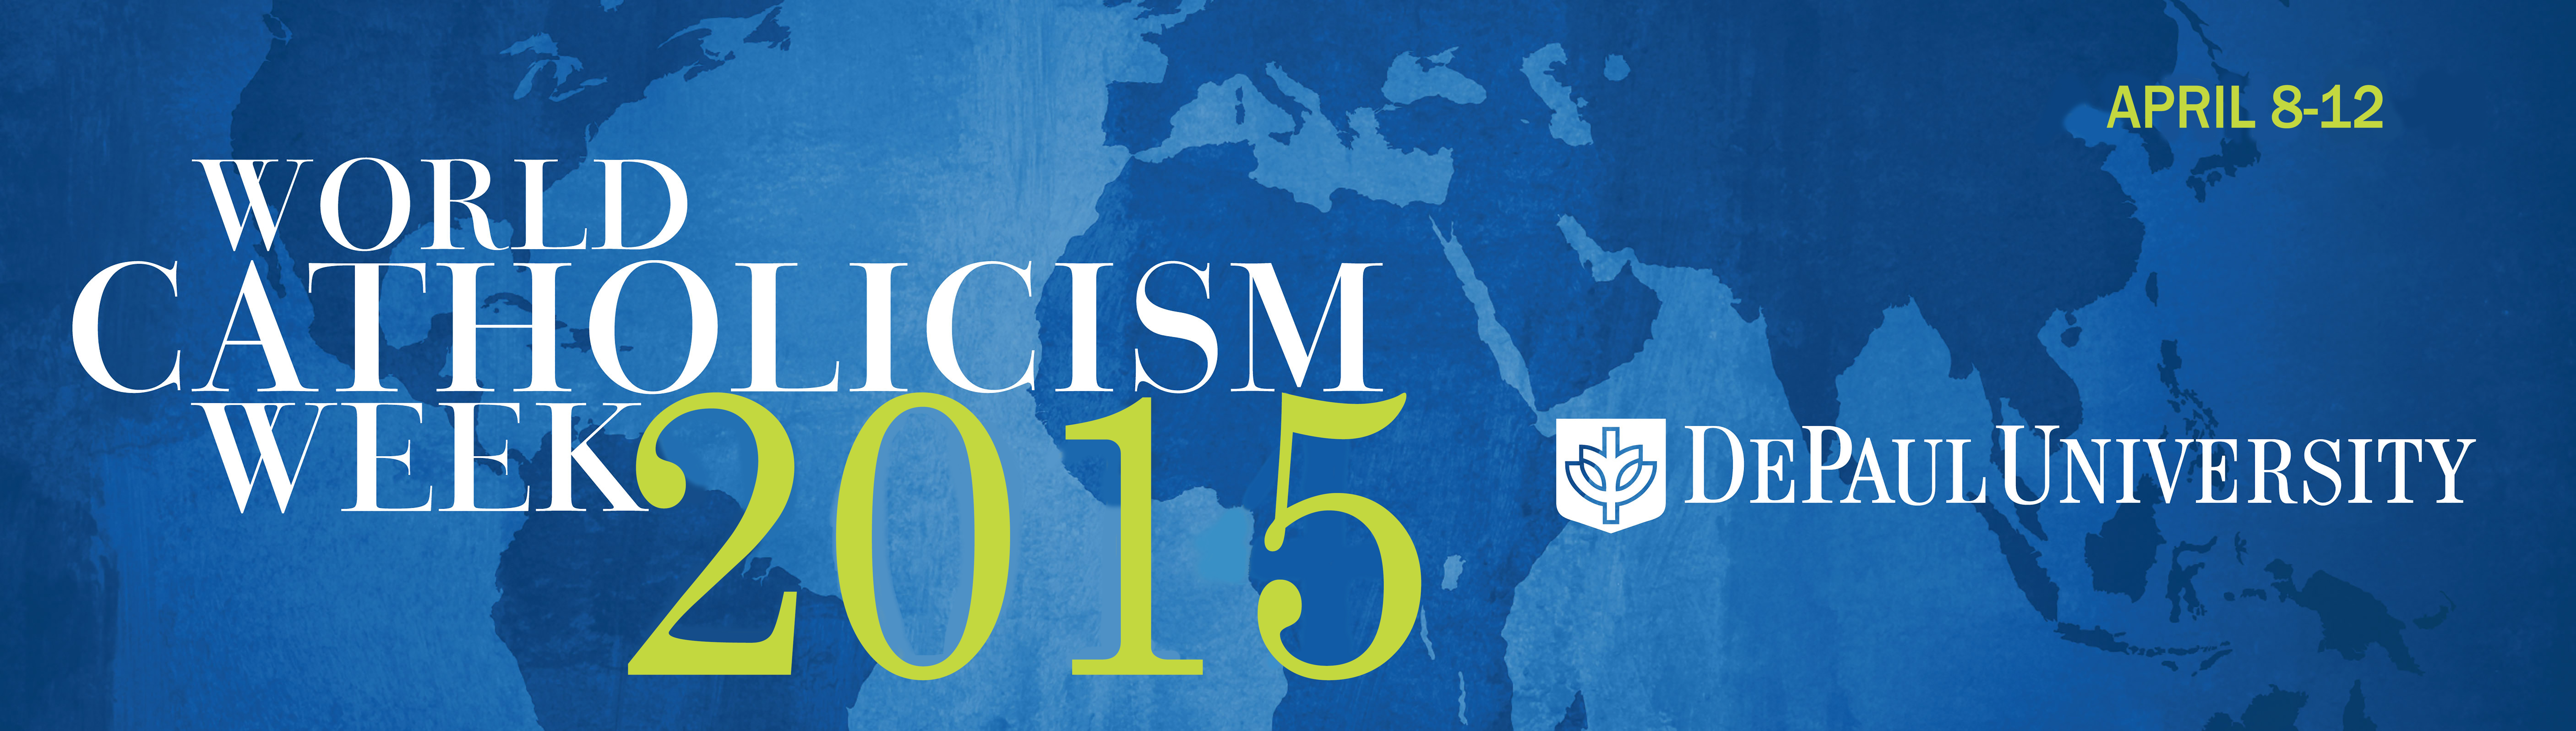 World Catholicism Week 2015